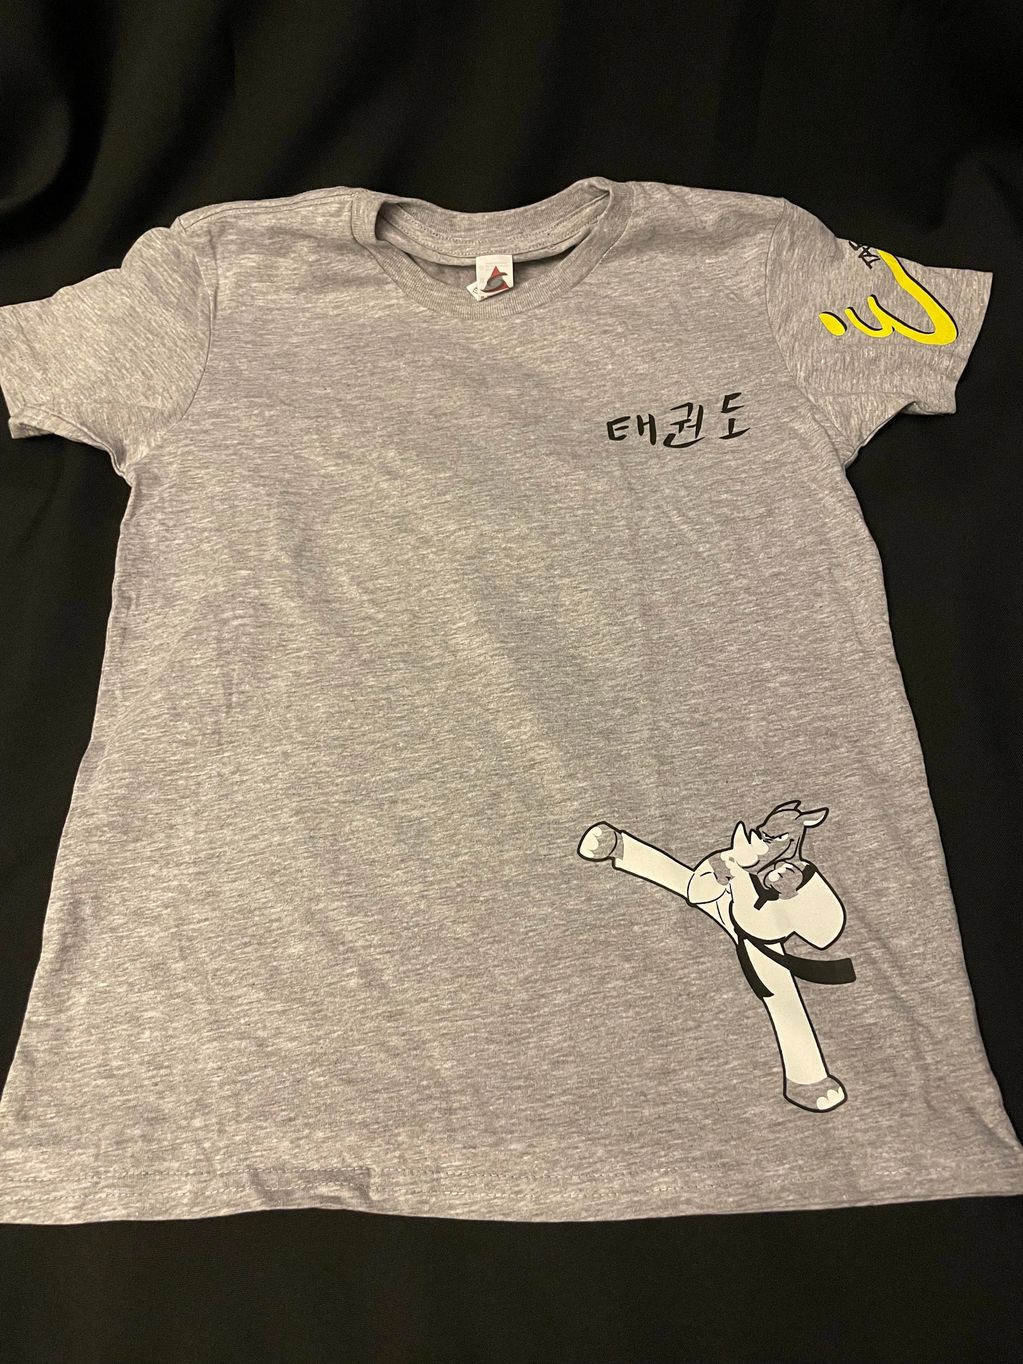 ETKDU Rhino Shirt $20